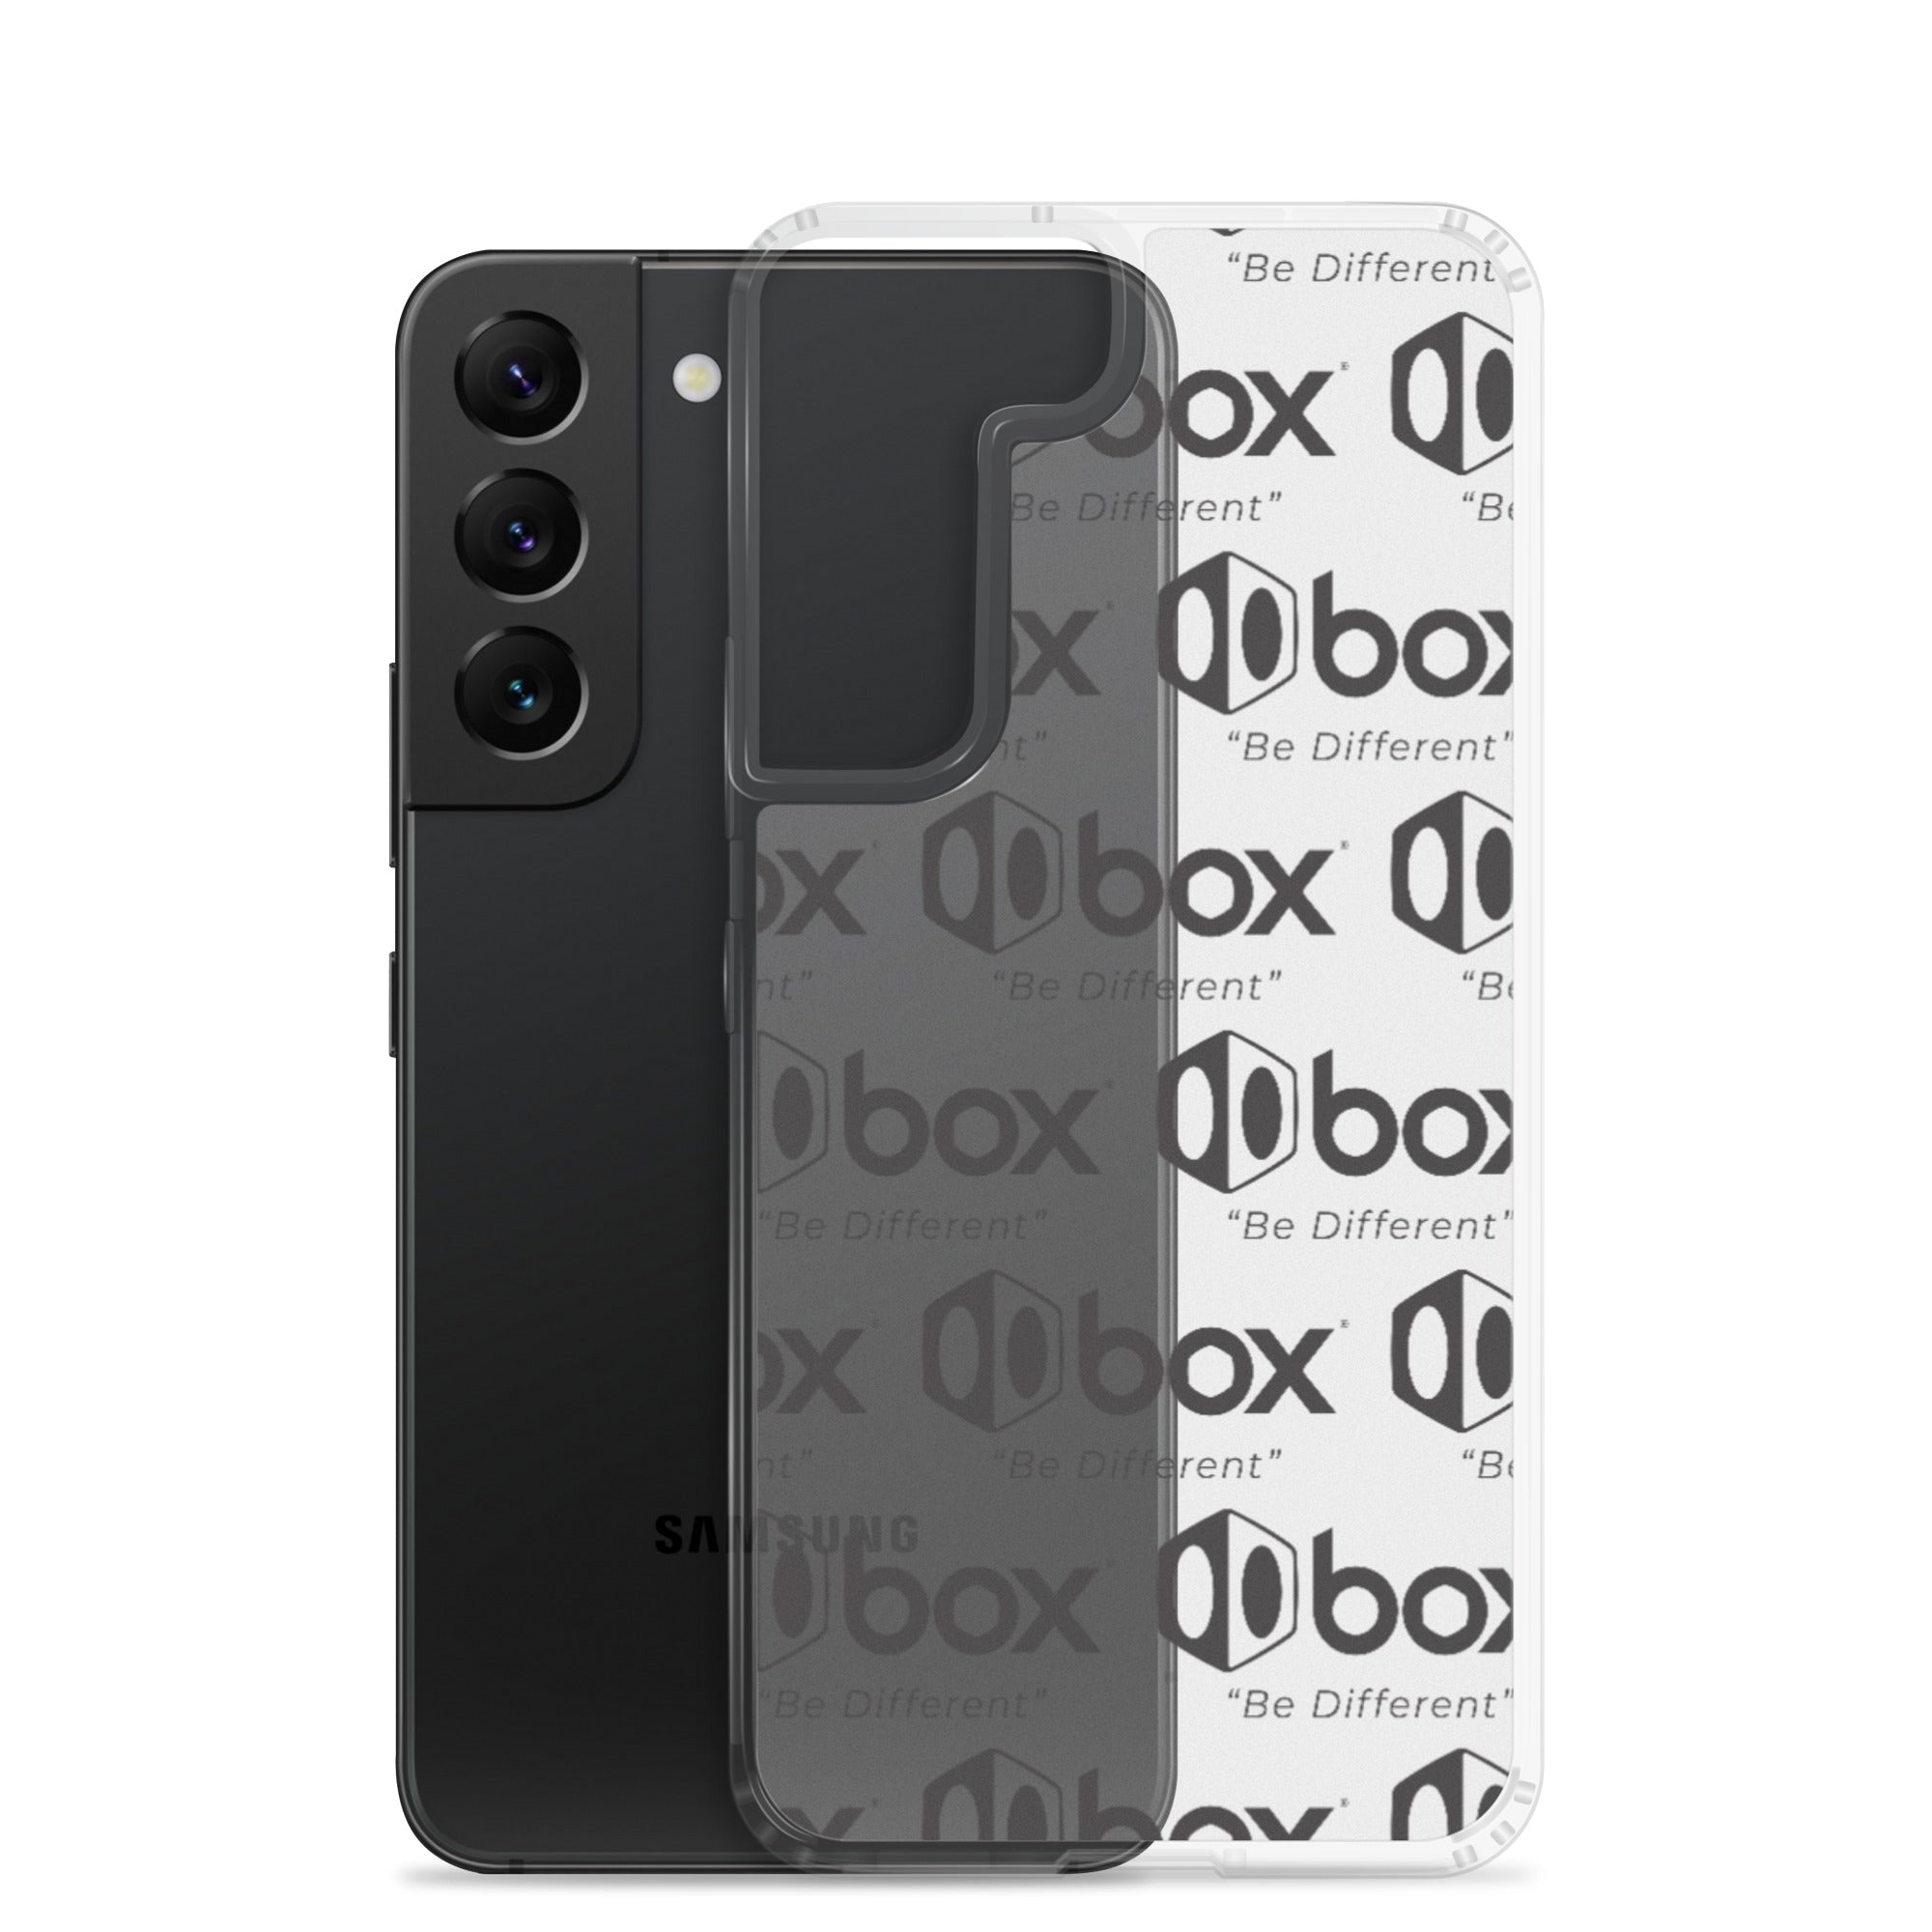 Box One Samsung Case